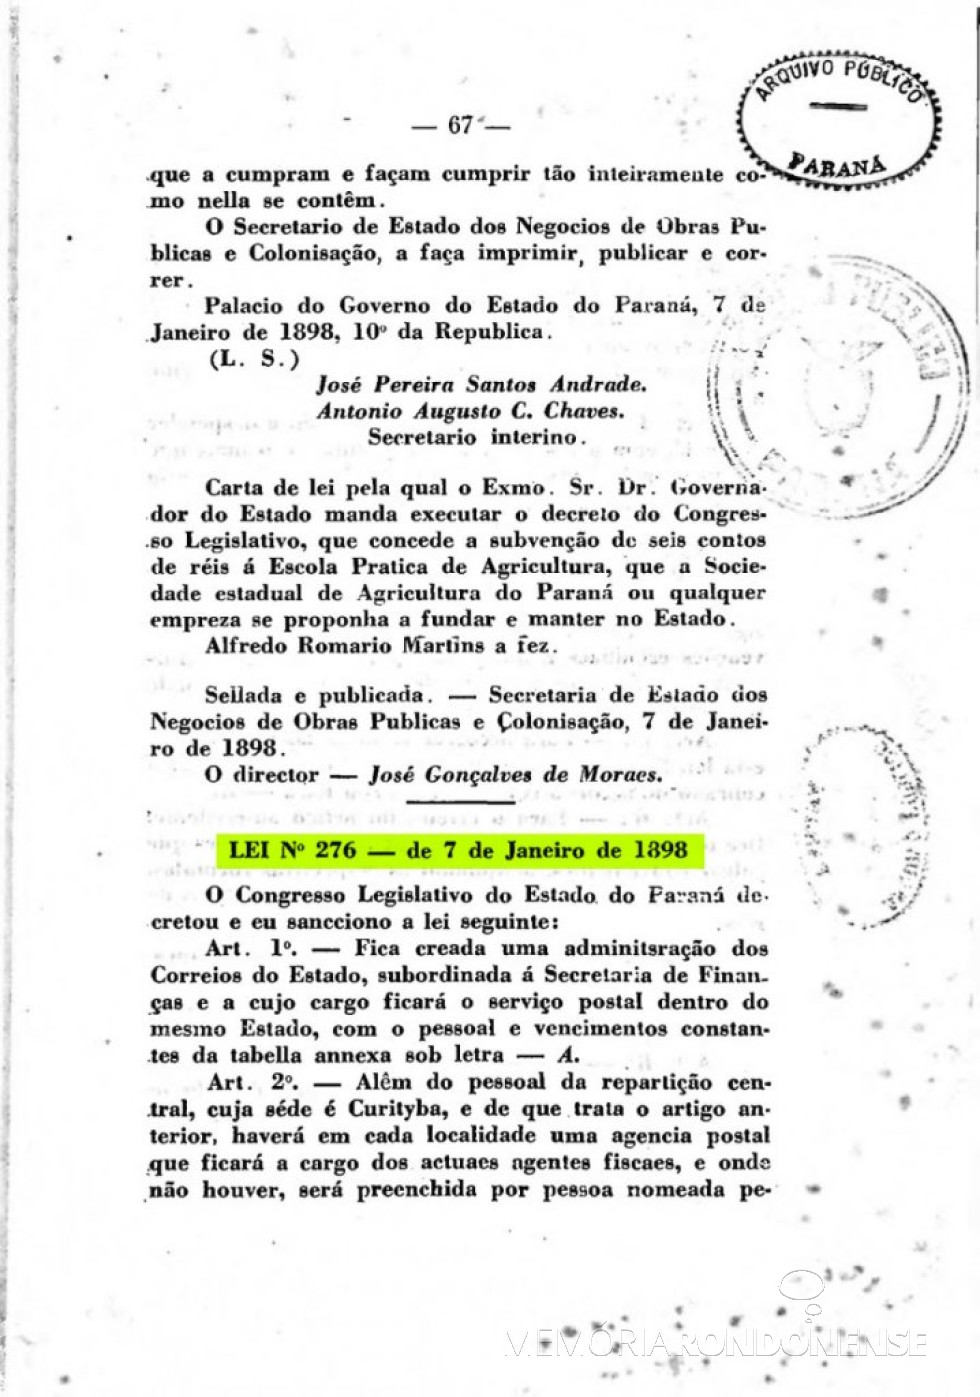 || Página 1 da publicação da Lei nº 276/1898, que criou a Administração dos Correios no Paraná. 
Imagem: Acervo Arquivo Público do Paraná - FOTO 2 - 